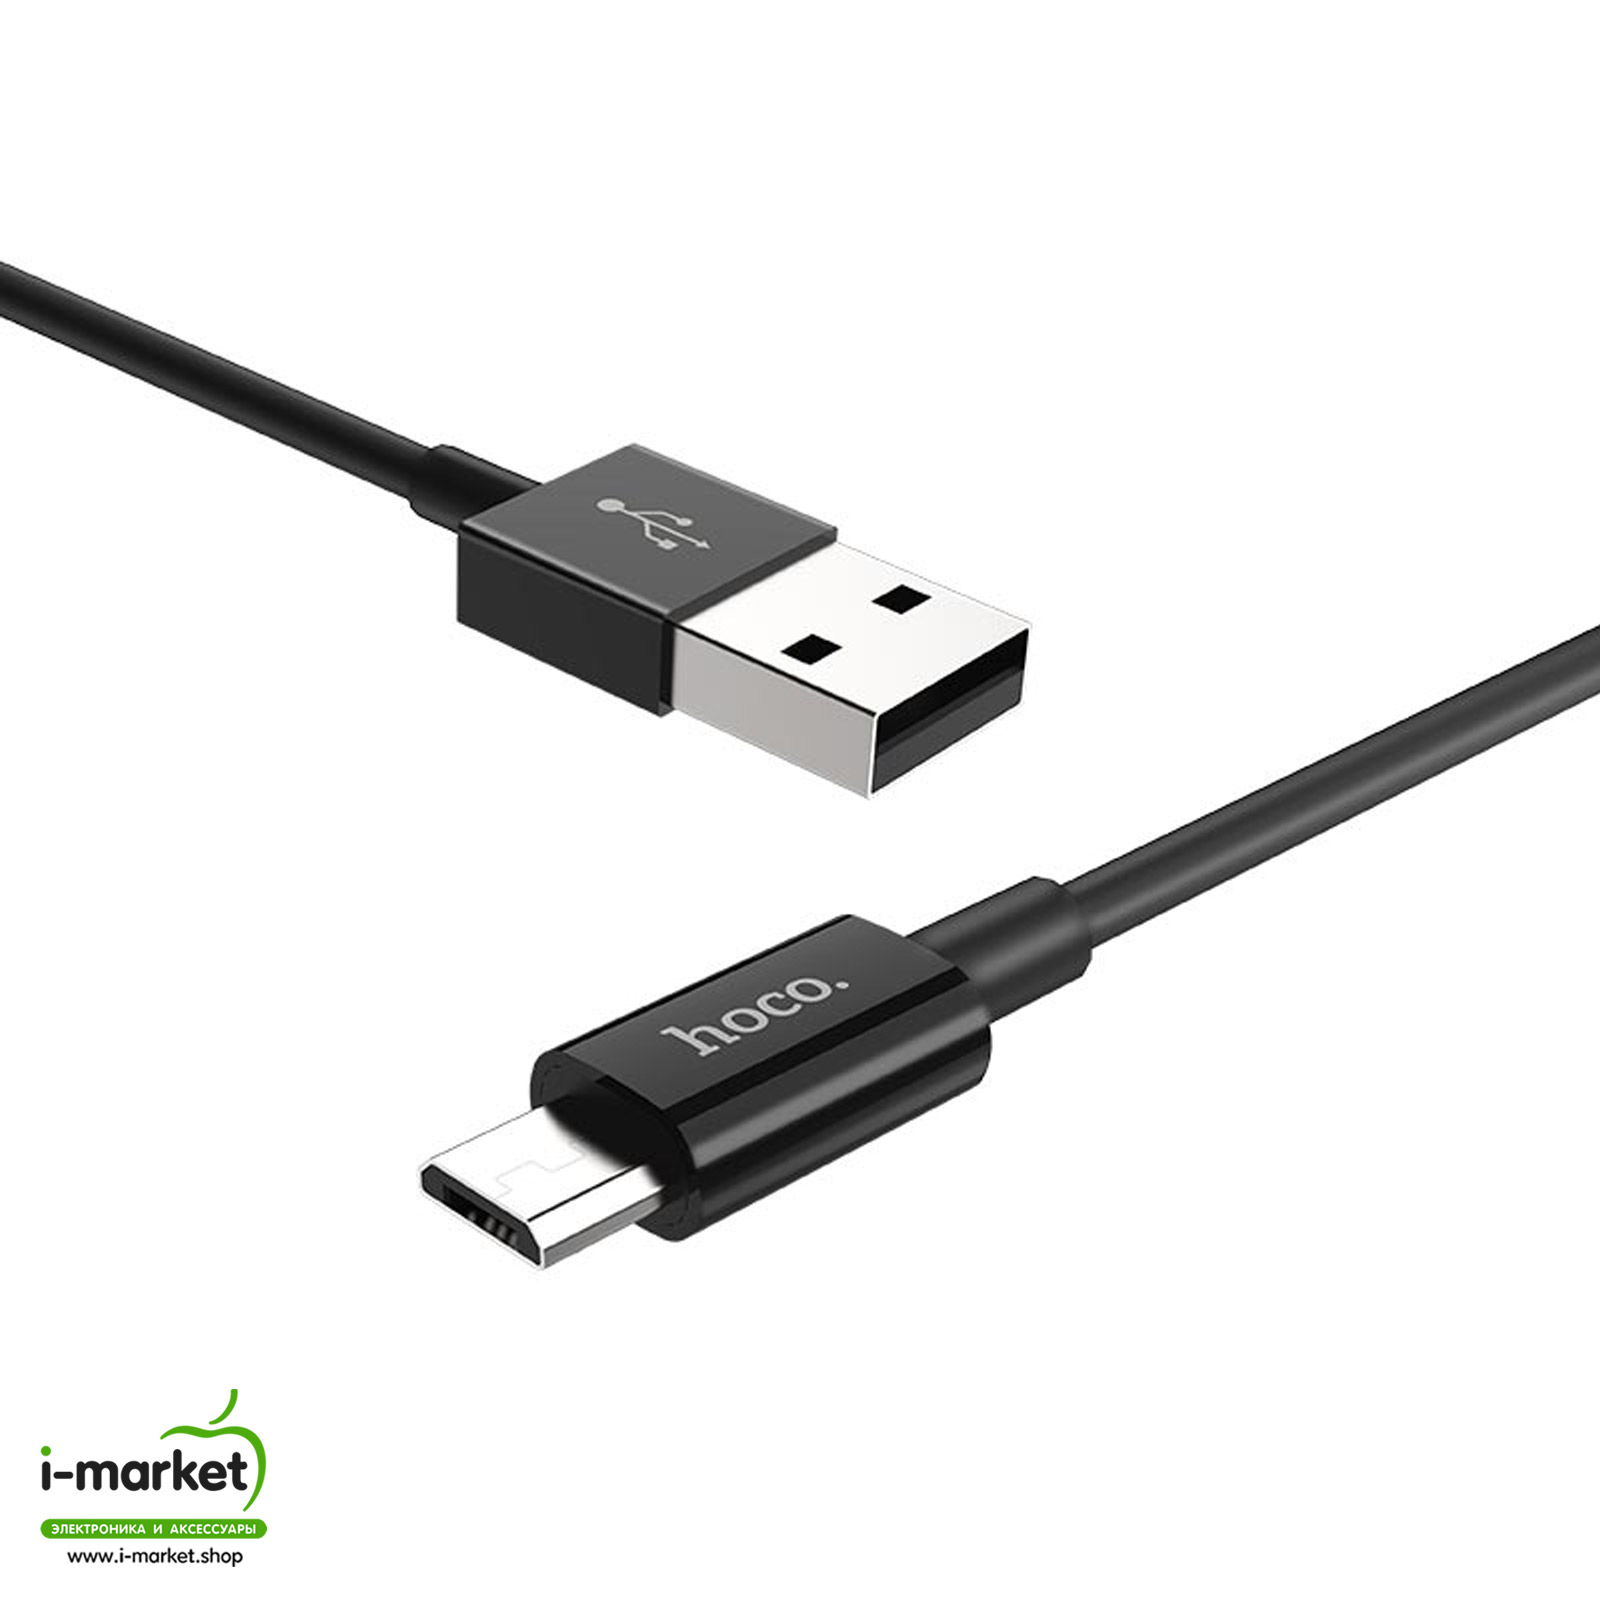 Кабель Micro USB HOCO X23 Skilled, длина 1 метр, цвет черный